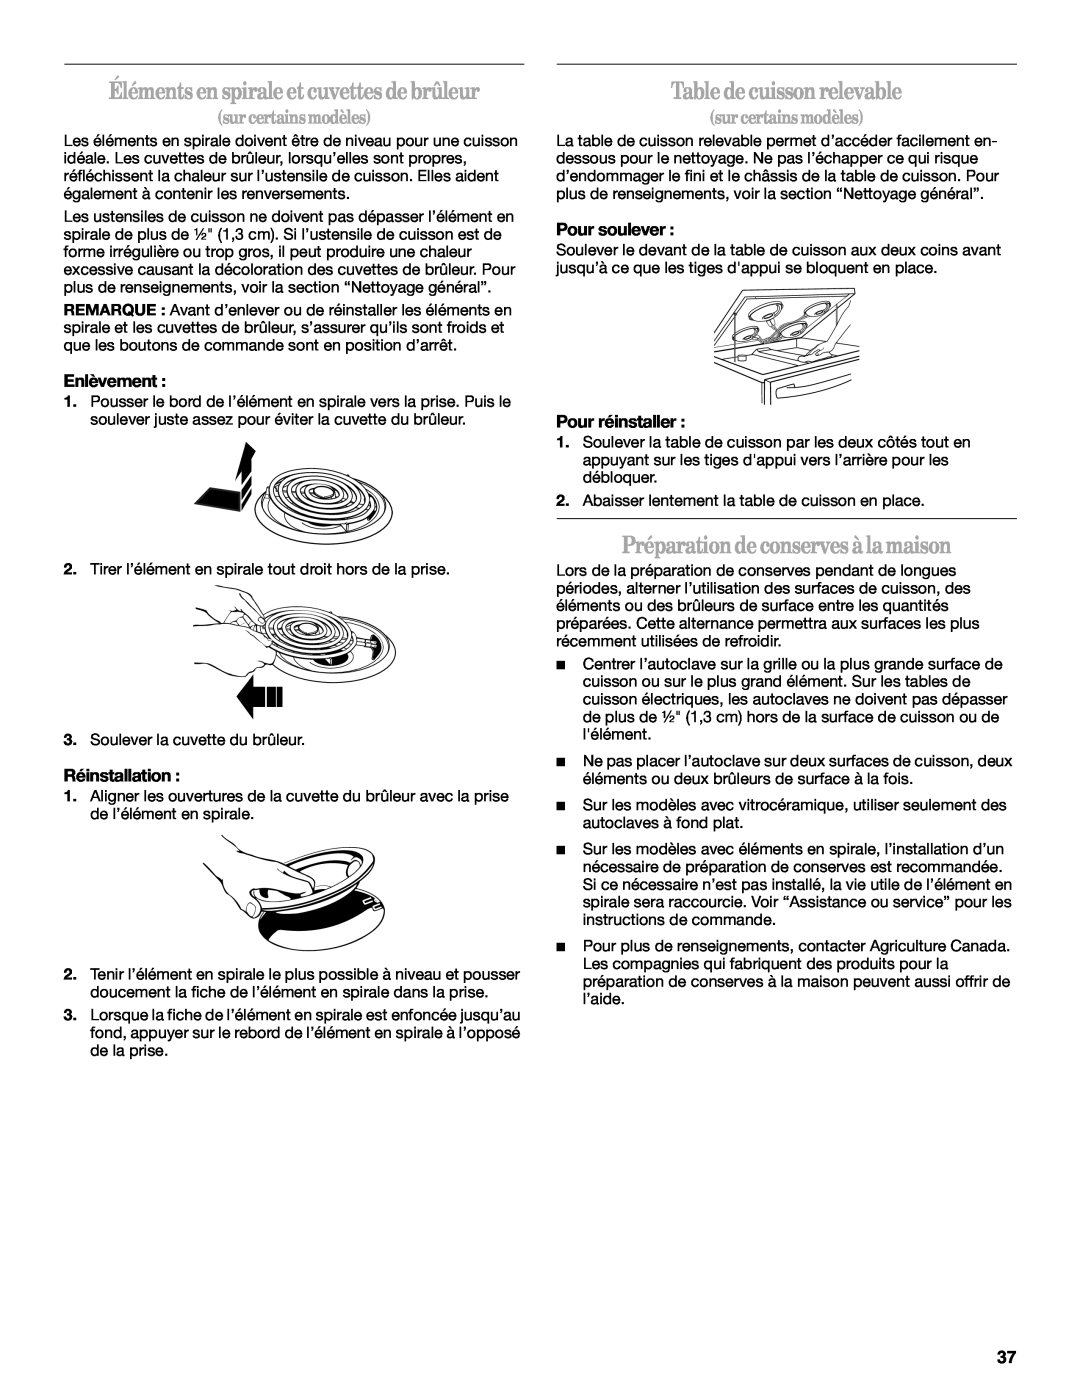 Whirlpool GERC4110PB2 manual Table de cuisson relevable, Préparation de conserves à la maison, Enlèvement, Réinstallation 